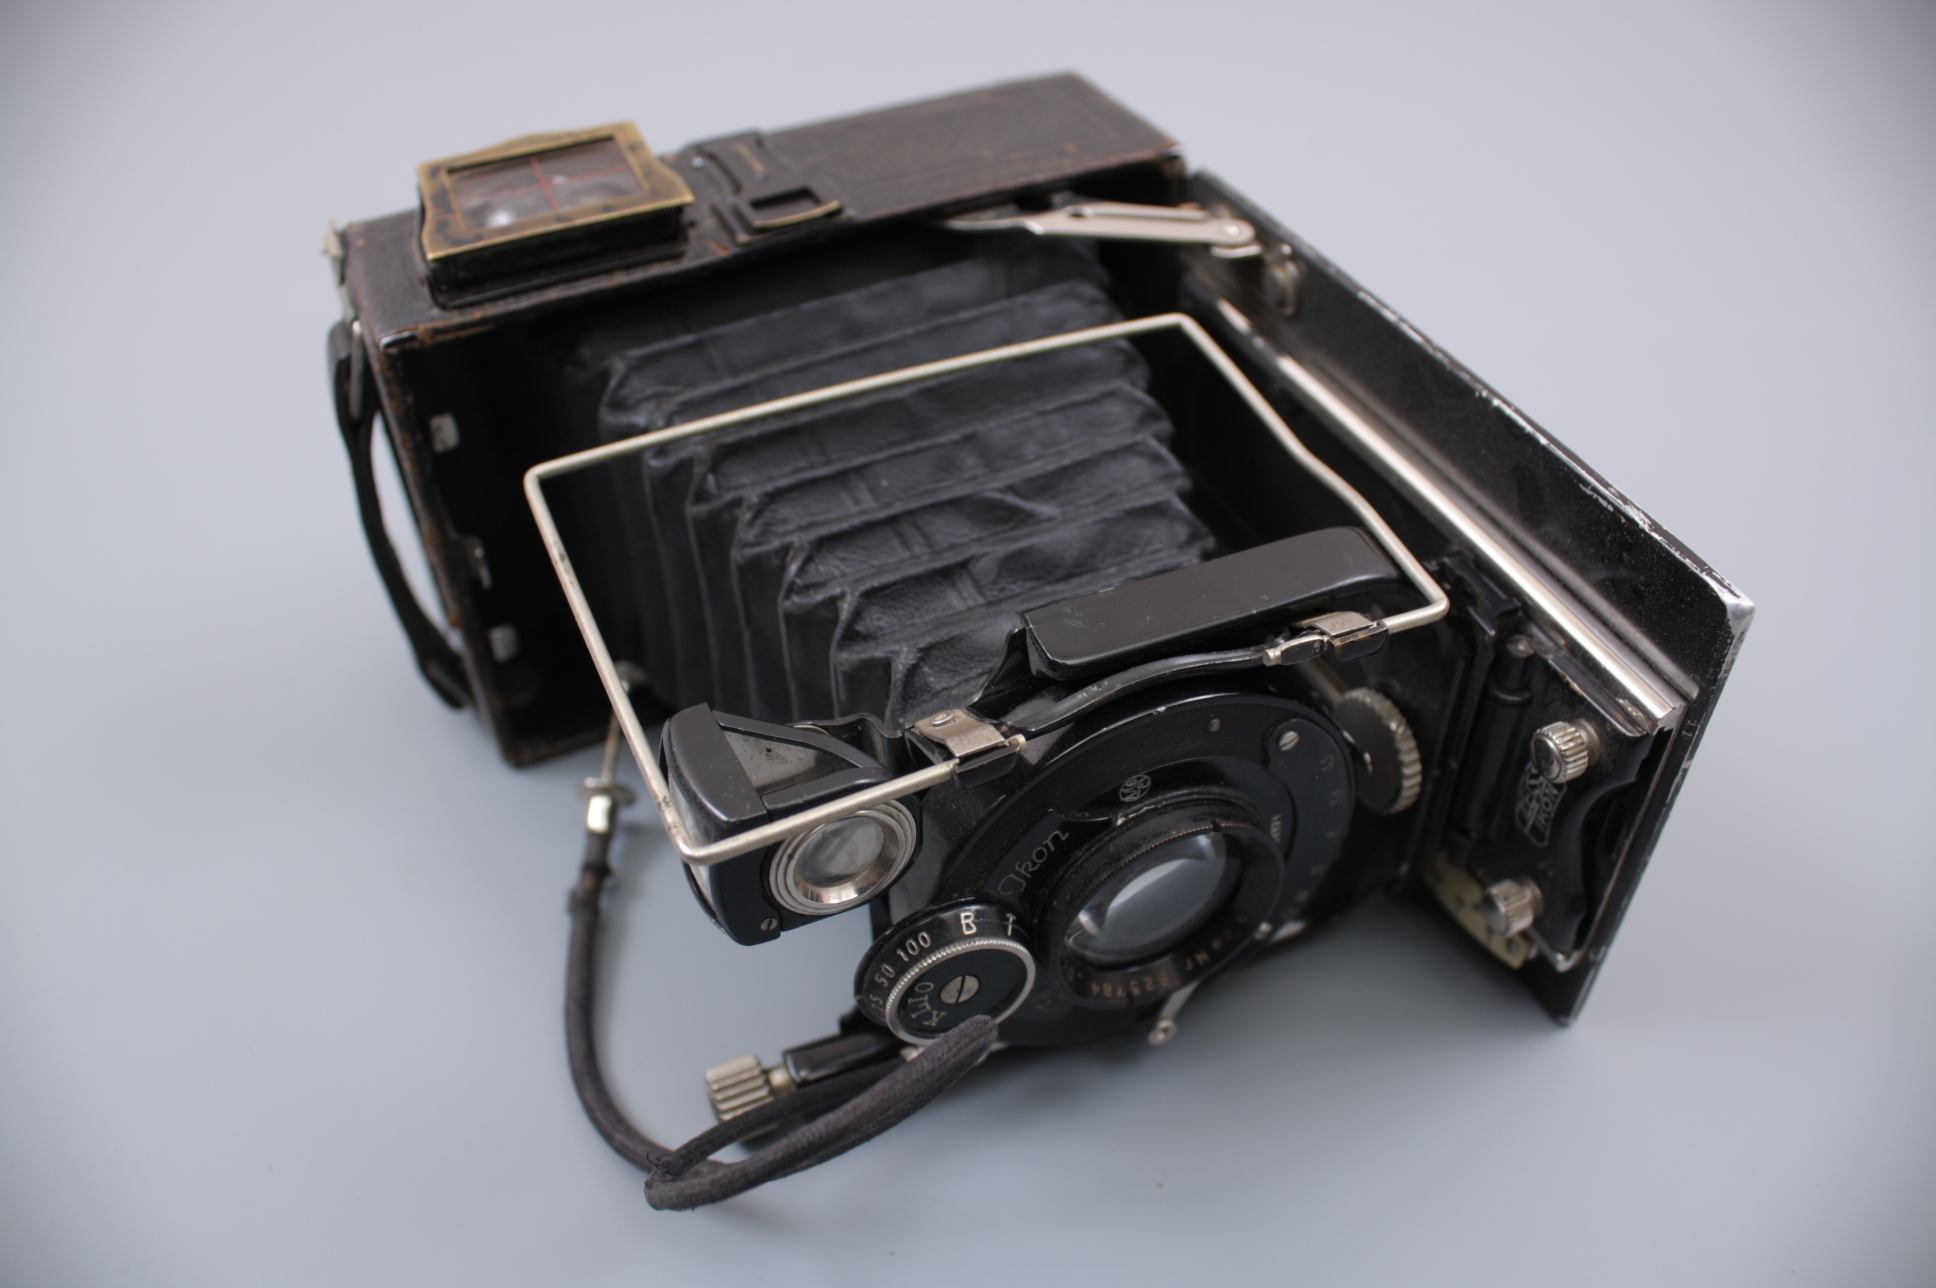 Пластинчатая камера 9х12 "ZEISS IKON VOLTA 146/7" нач. 1930-х гг., Германия.